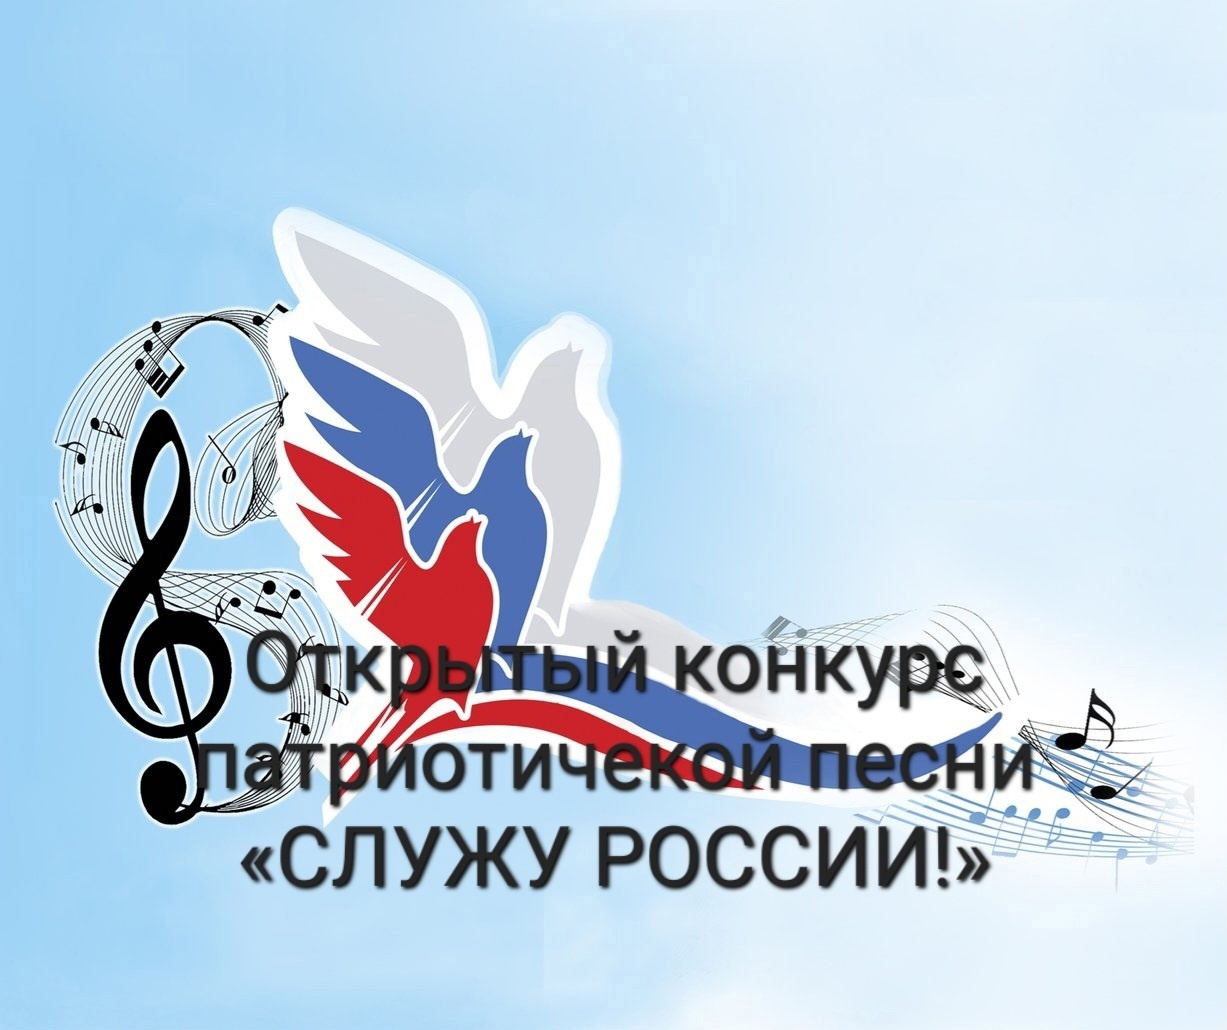 Конкурс патриотической песни «Служу России!» объединил 200 вокалистов